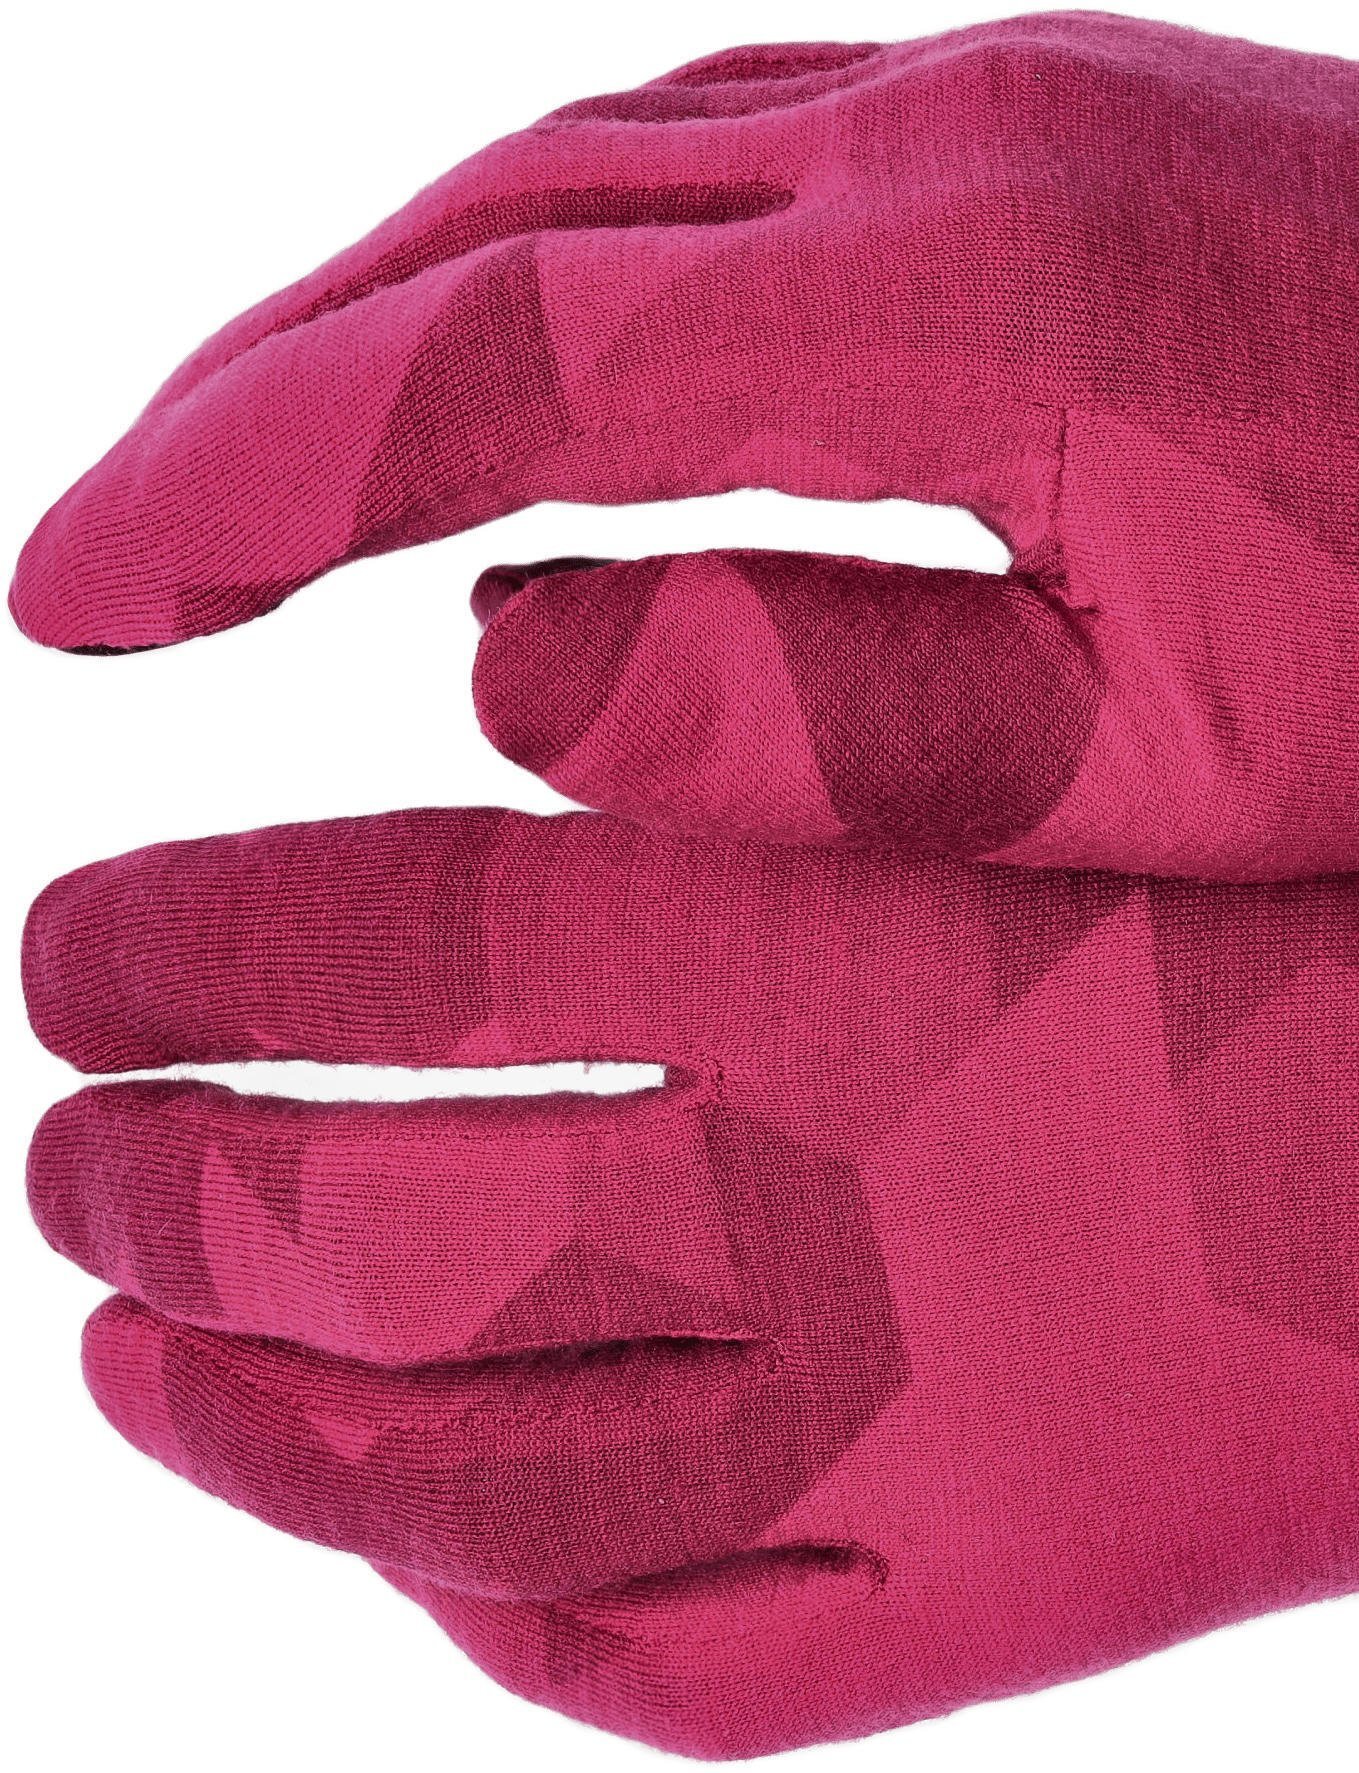 Рукавички жіночі Salewa Cristallo W Gloves 28514 6319 8/L рожевийфото4